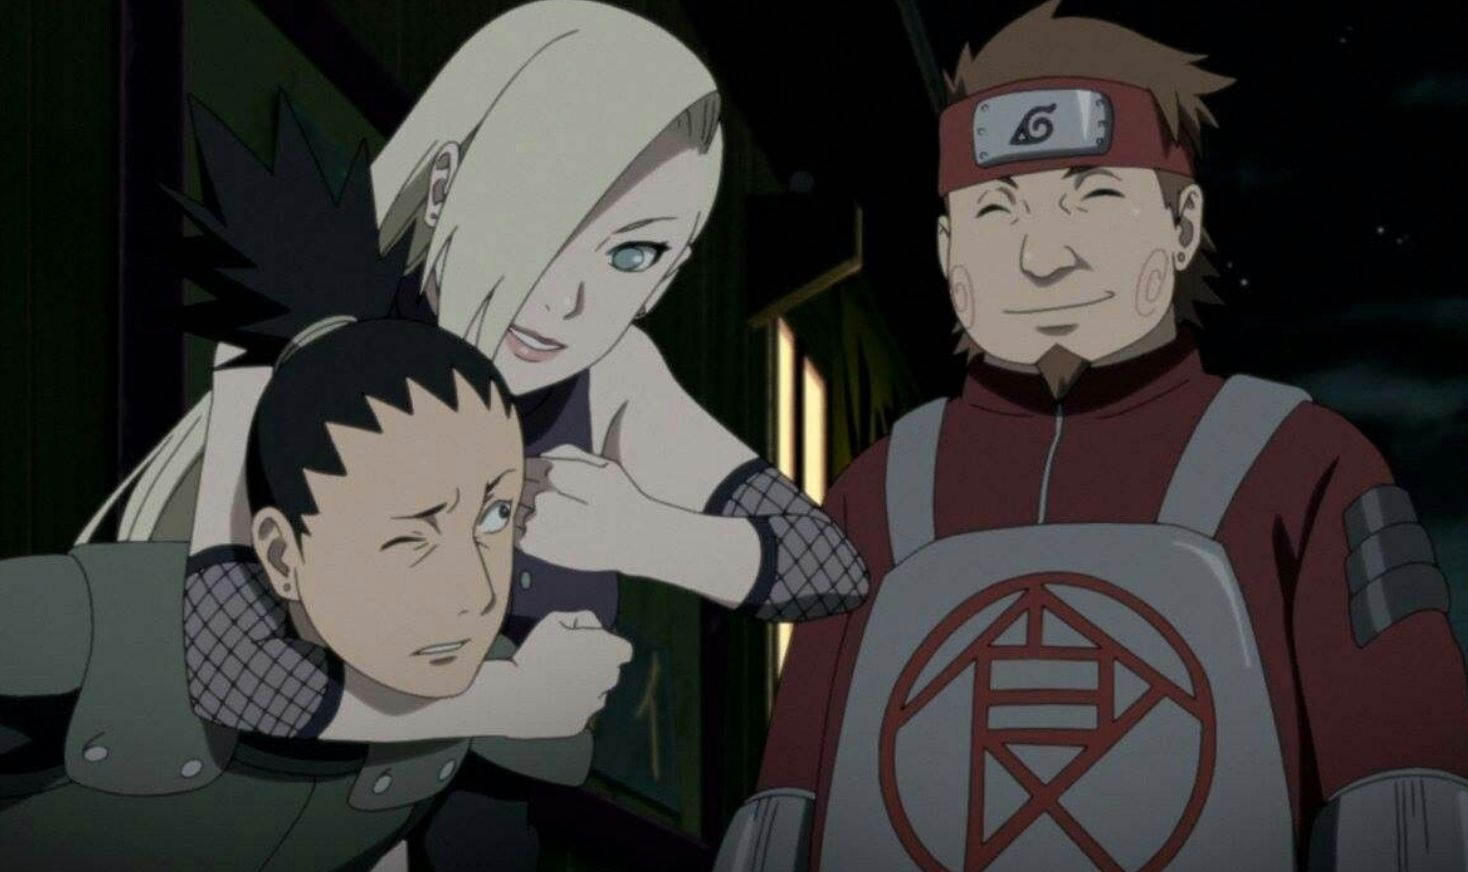 Shikamaru Ino And Choji During The Naruto Blank Period